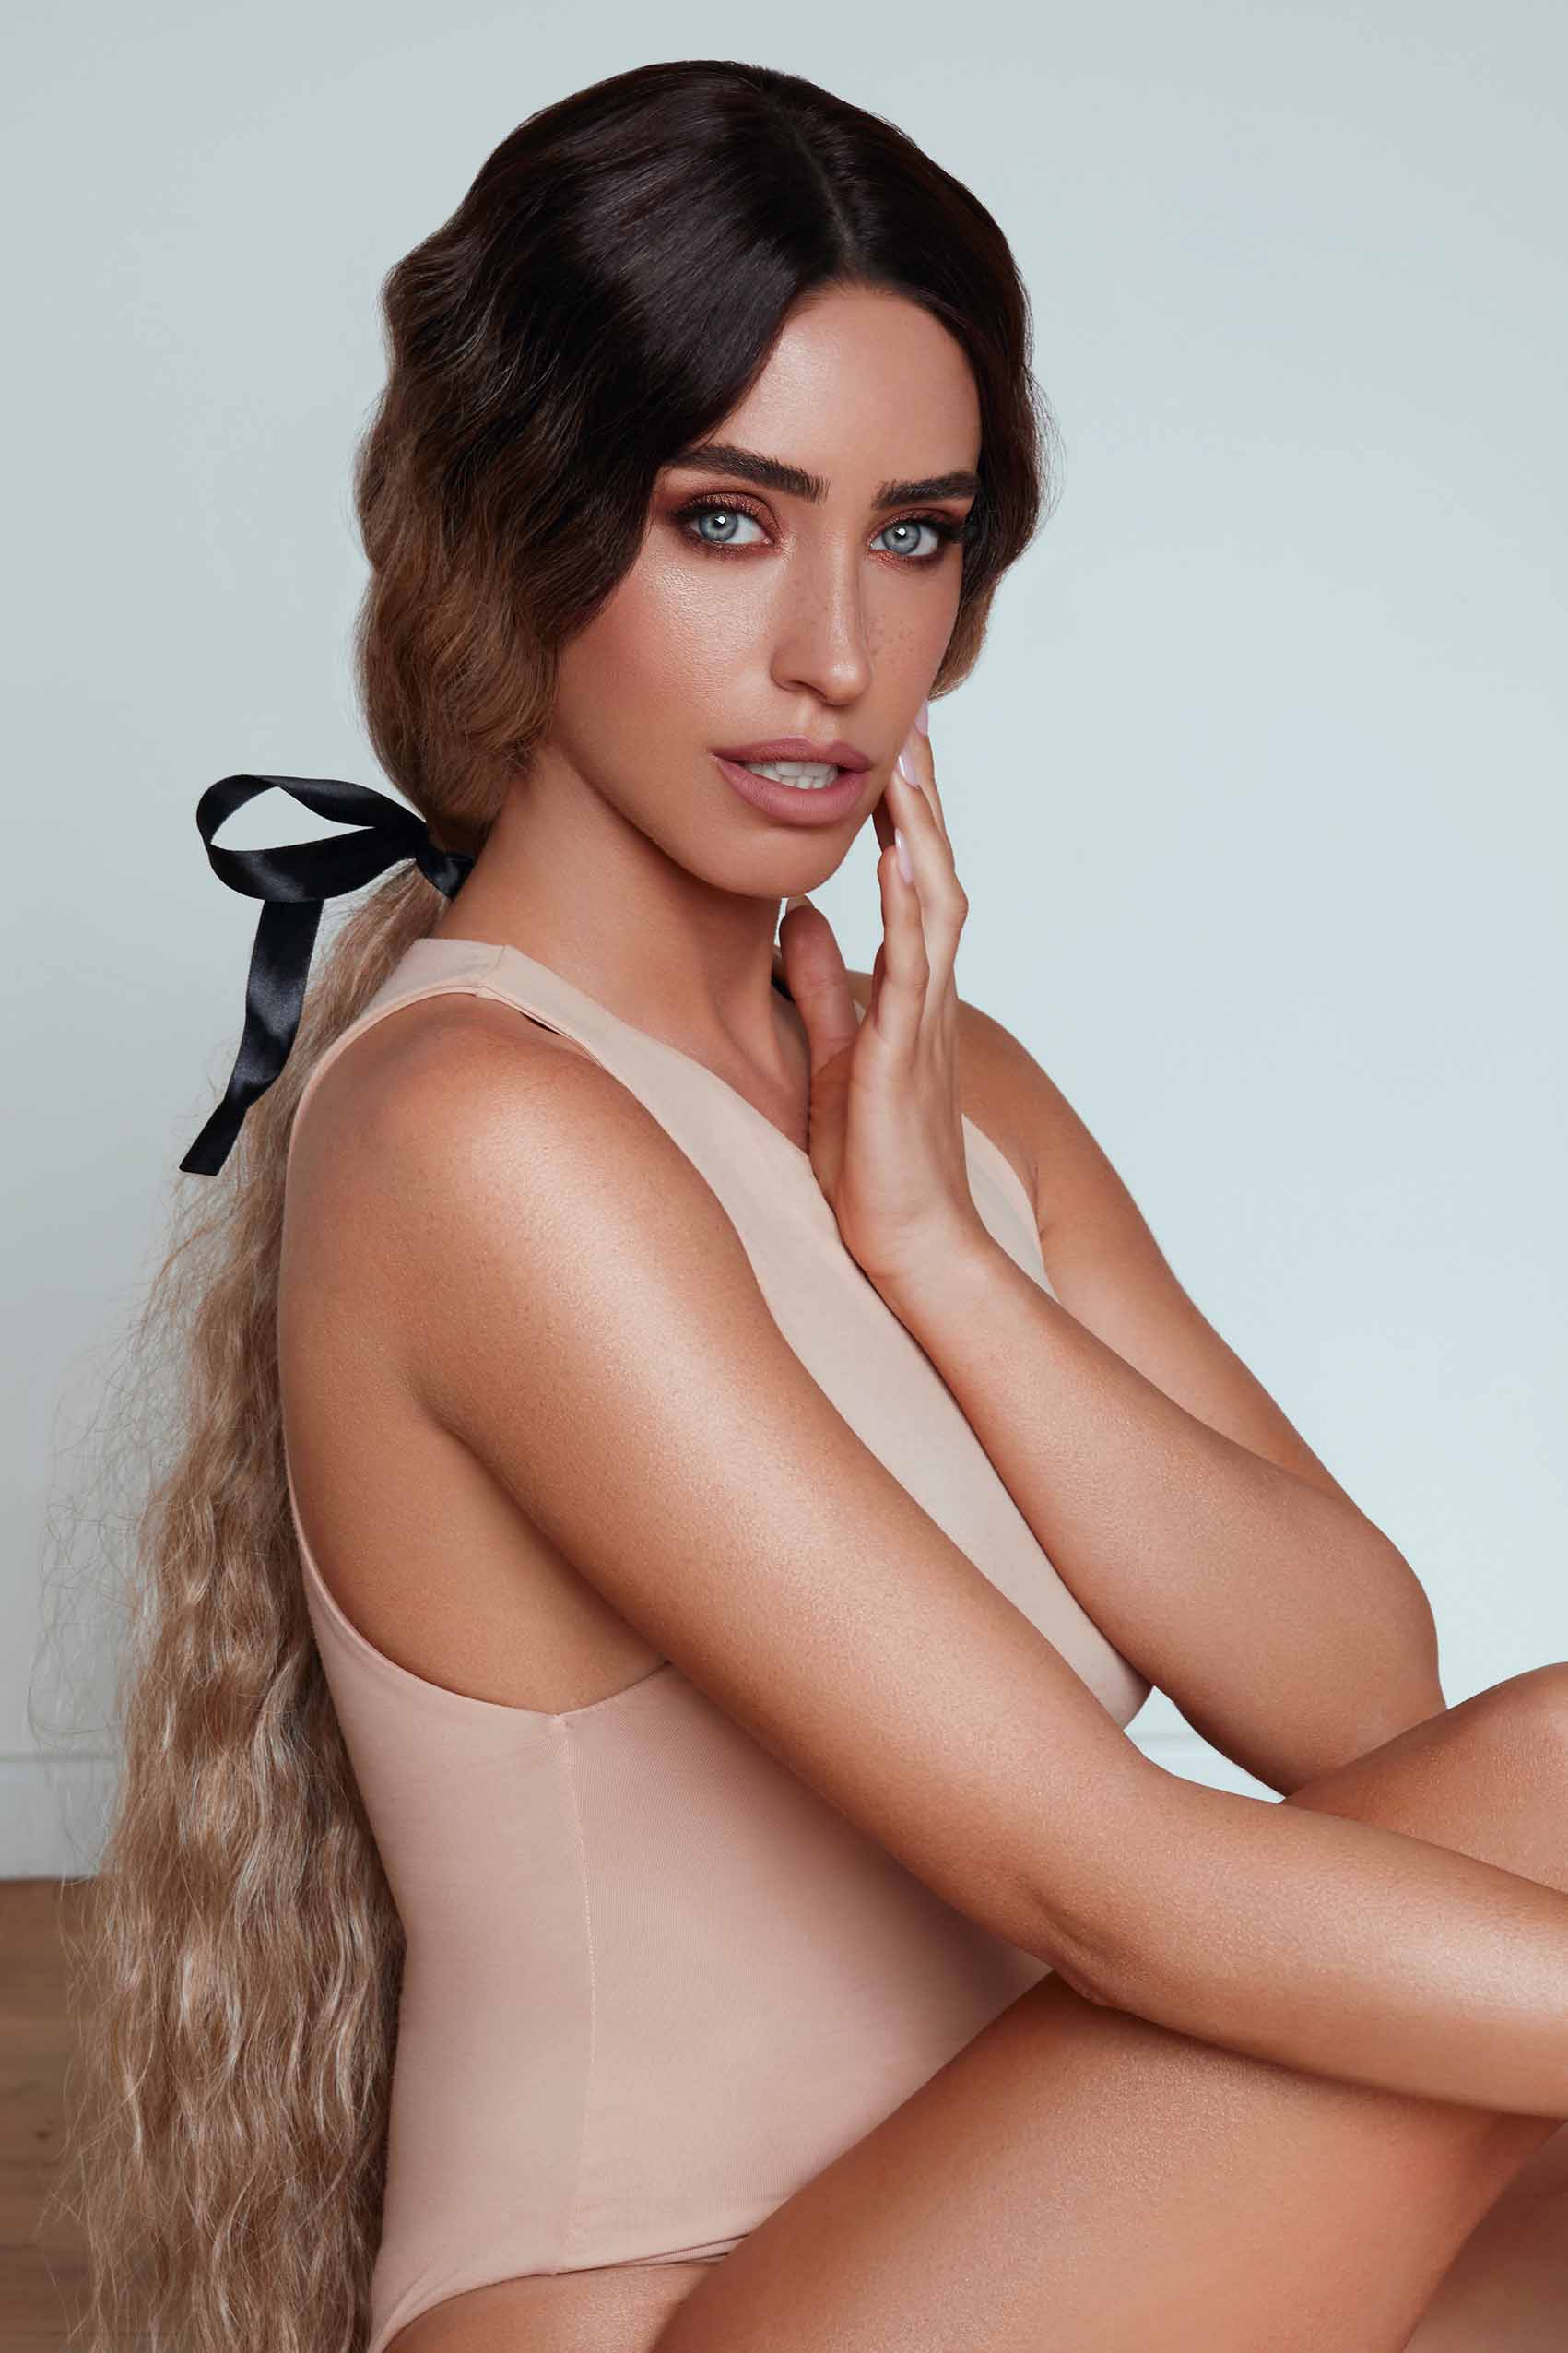 צילום: shay kahzam, איפור: yael mesika, דוגמנית: bar perez, שיער: shayhel difani - shayhal_difani, פאות: chani yanay - מגזין אופנה ישראלי -18